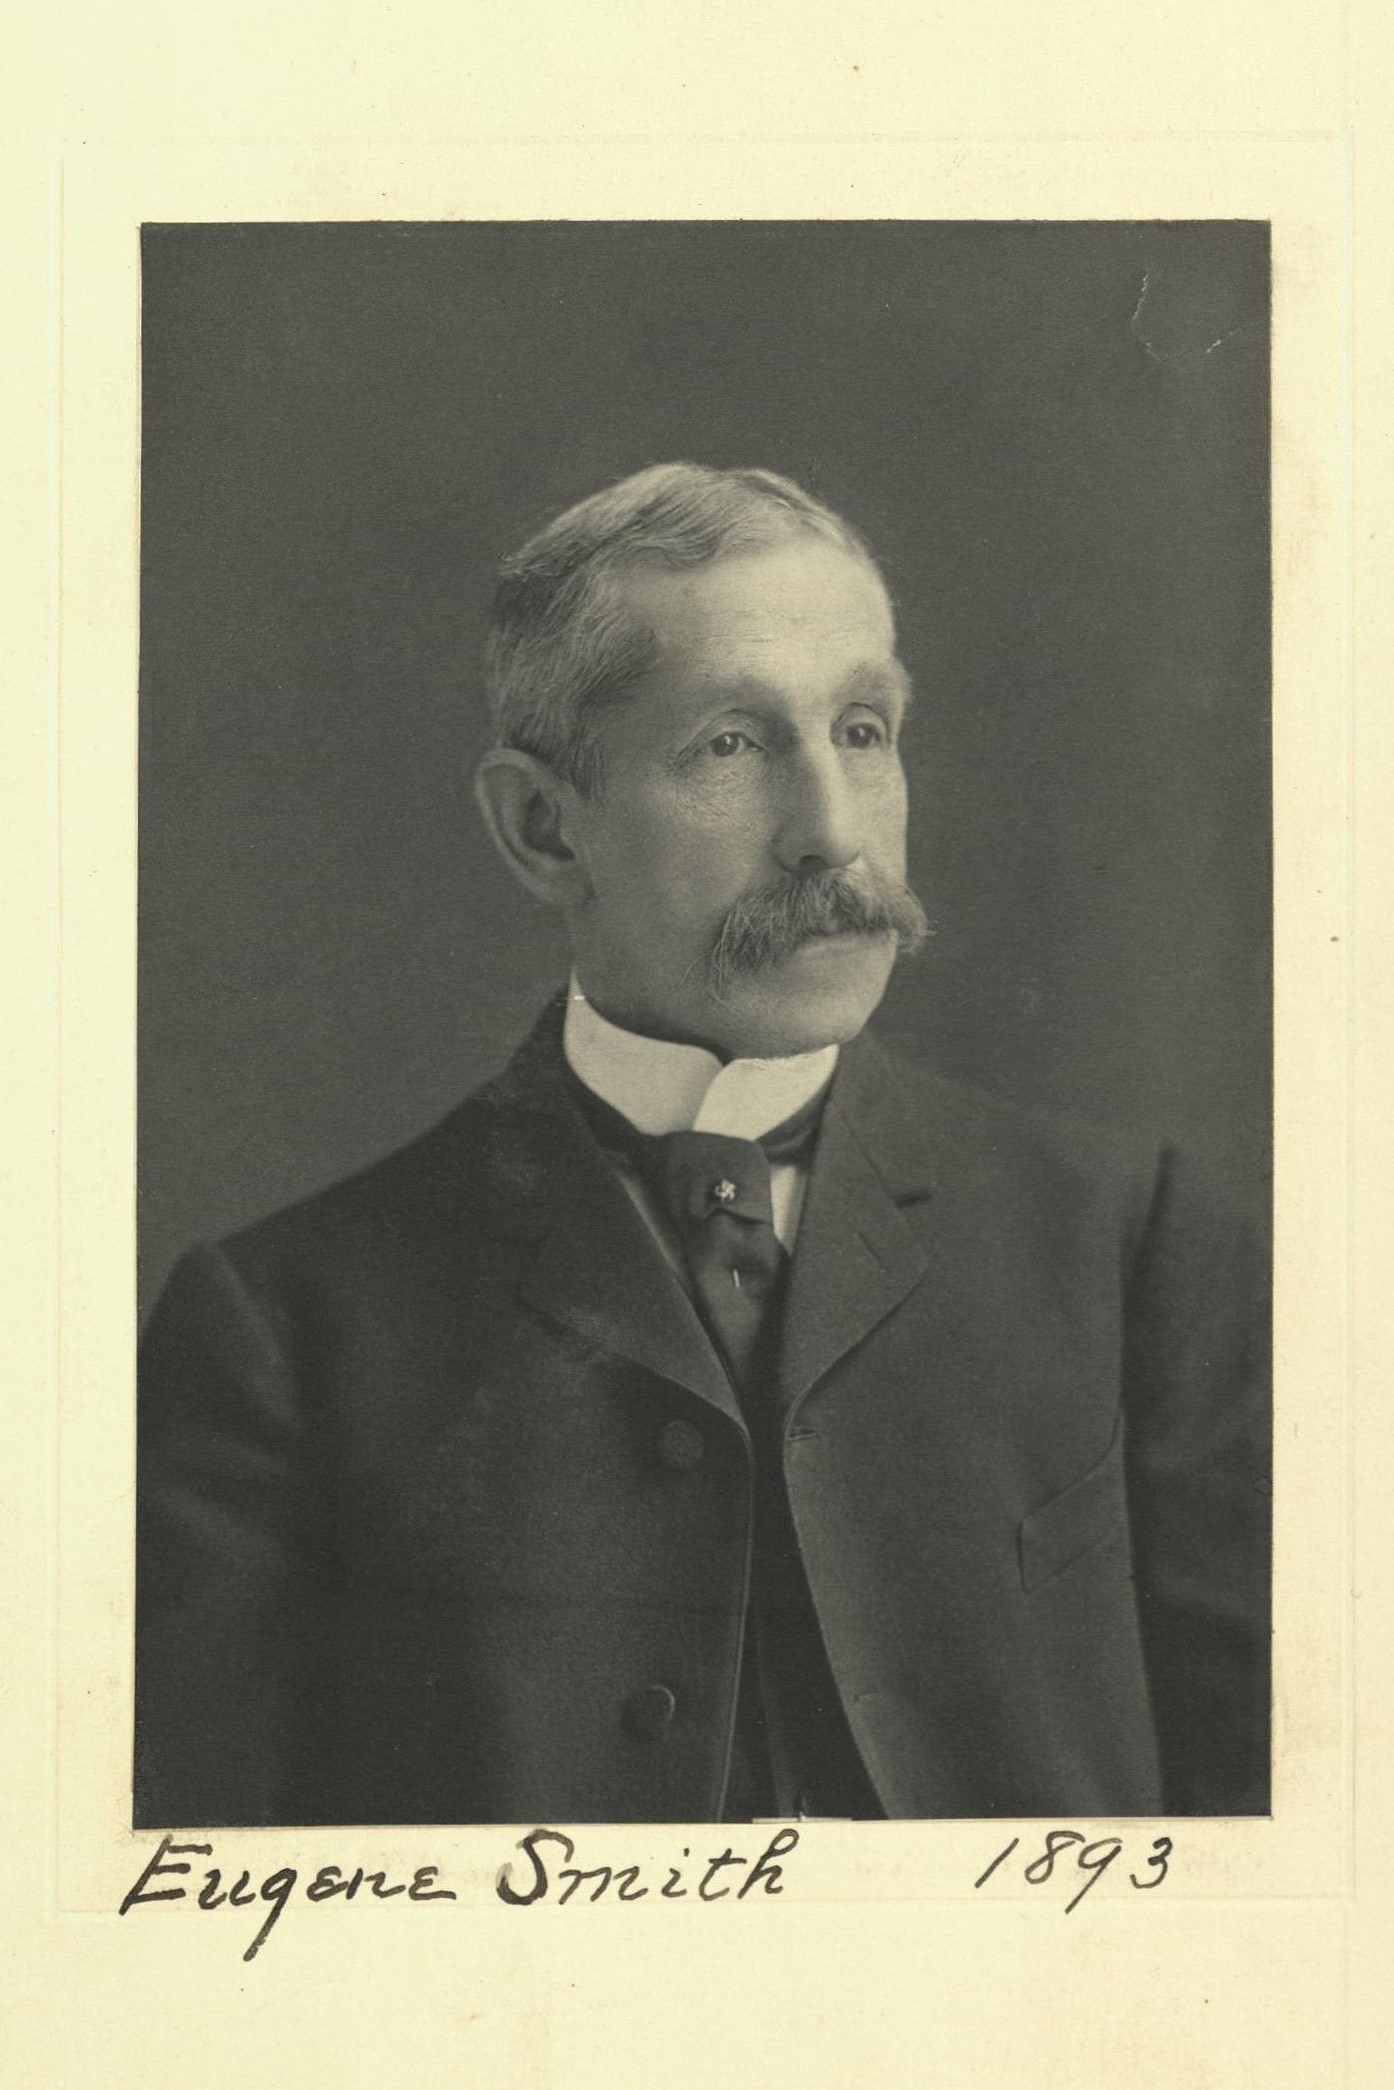 Member portrait of Eugene Smith